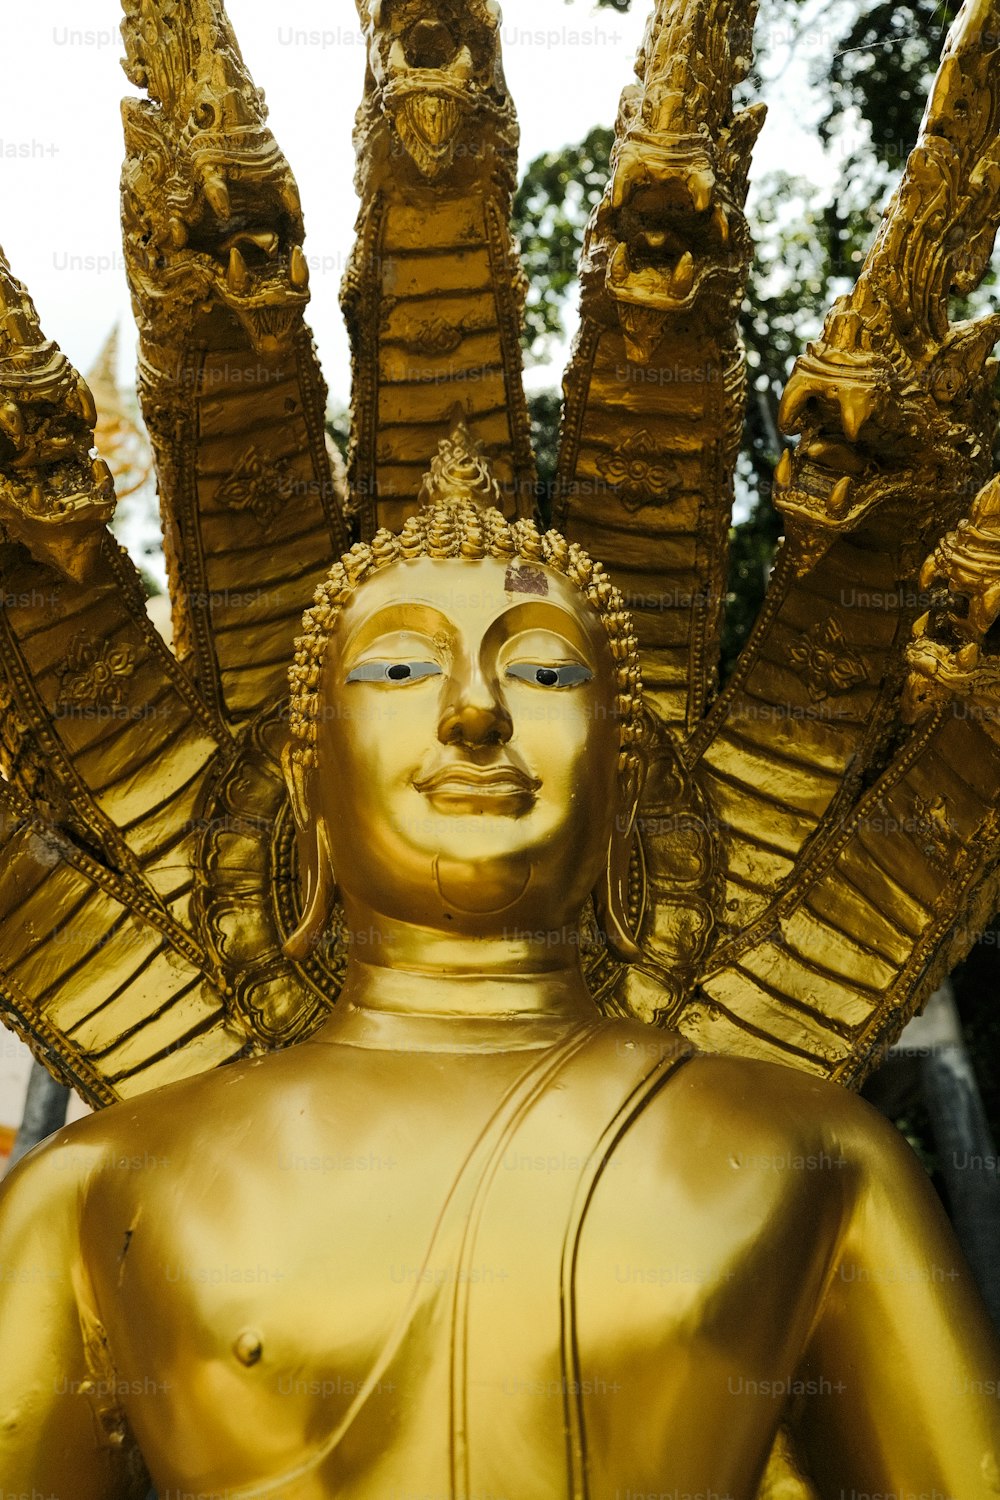 Una estatua dorada de una persona con muchos brazos extendidos